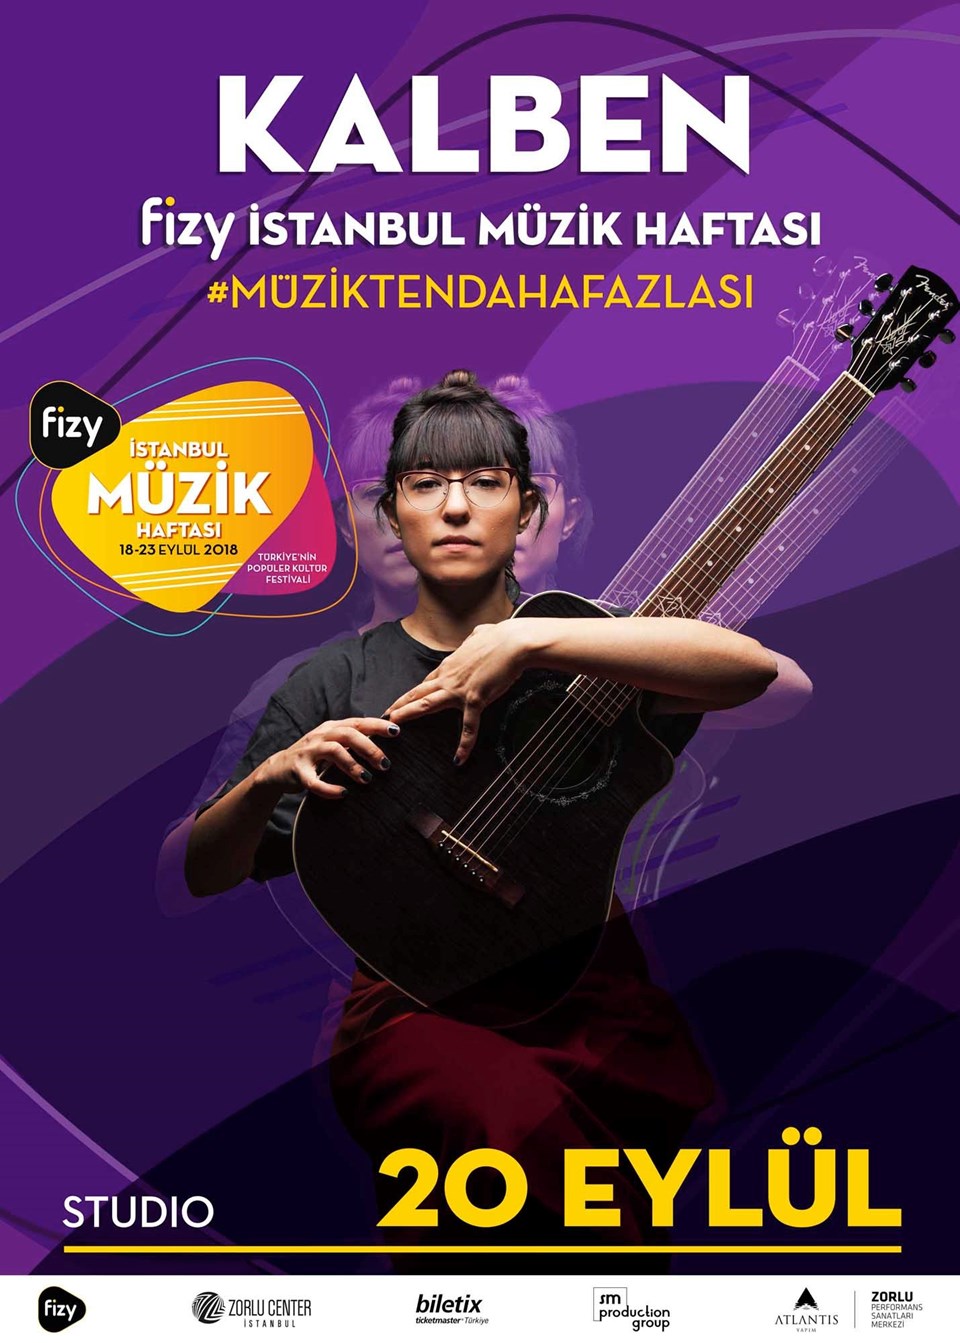 Fizy İstanbul Müzik Haftası başlıyor - 3